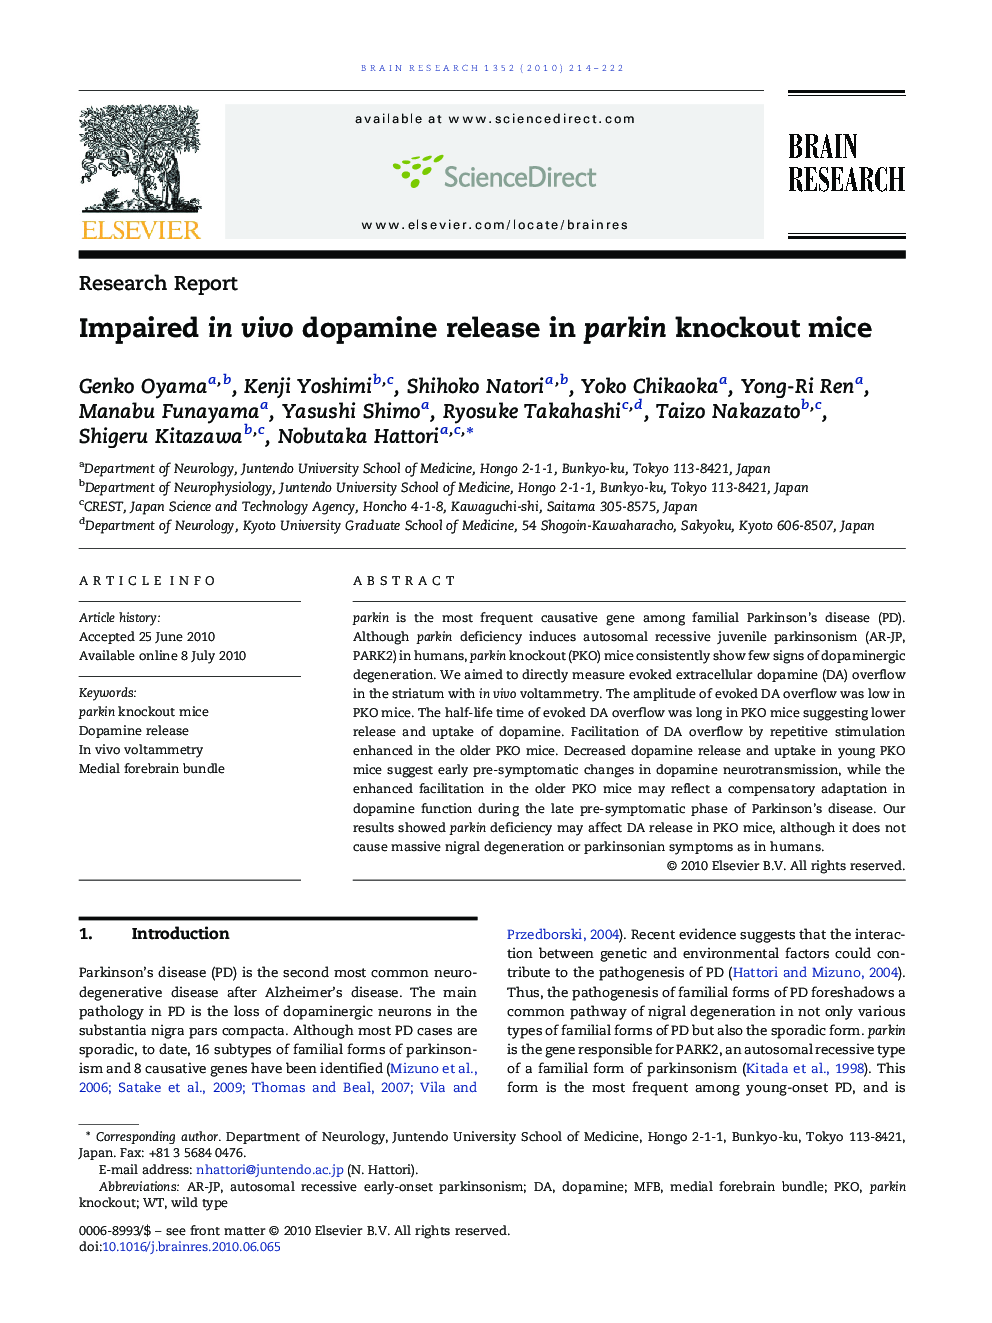 Impaired in vivo dopamine release in parkin knockout mice